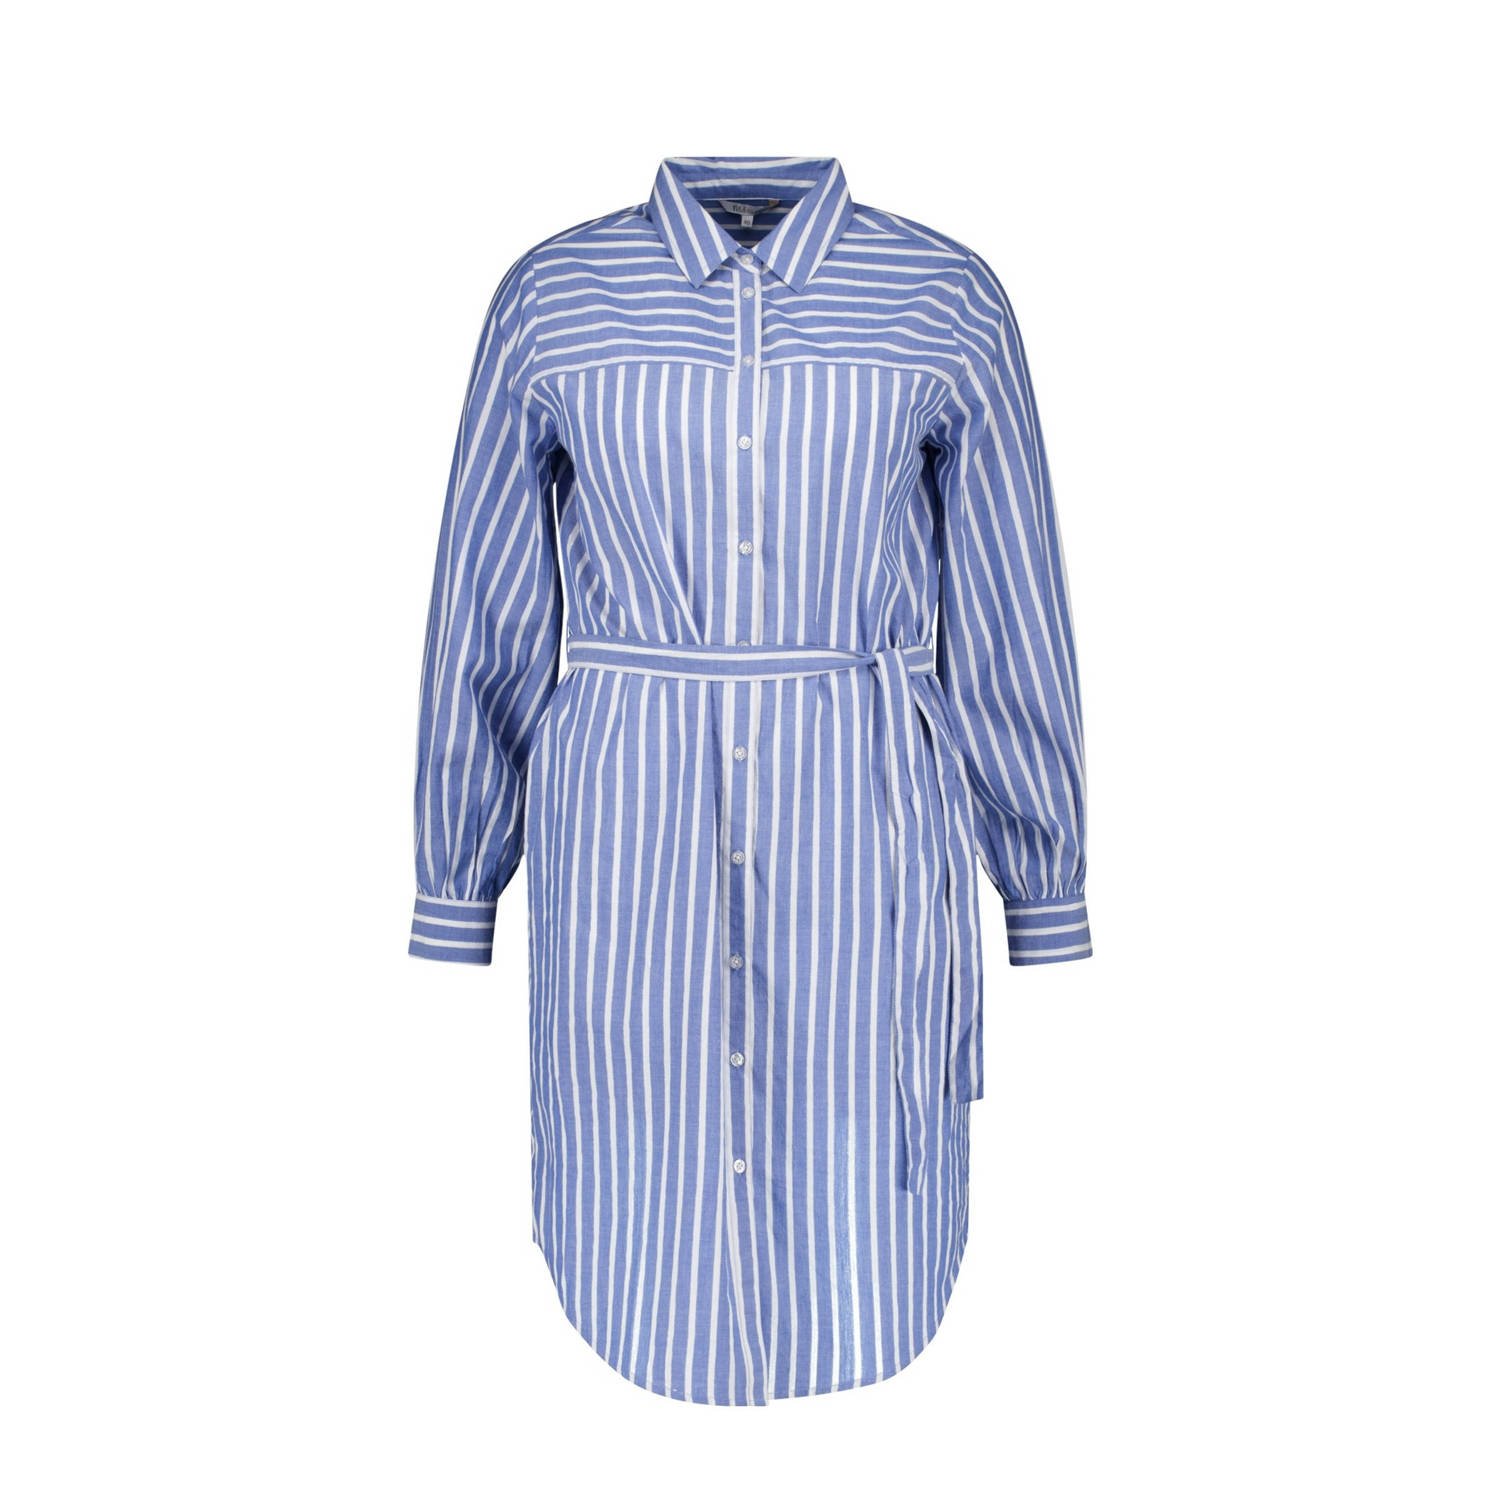 MS Mode blousejurk met krijtstreep en ceintuur blauw wit